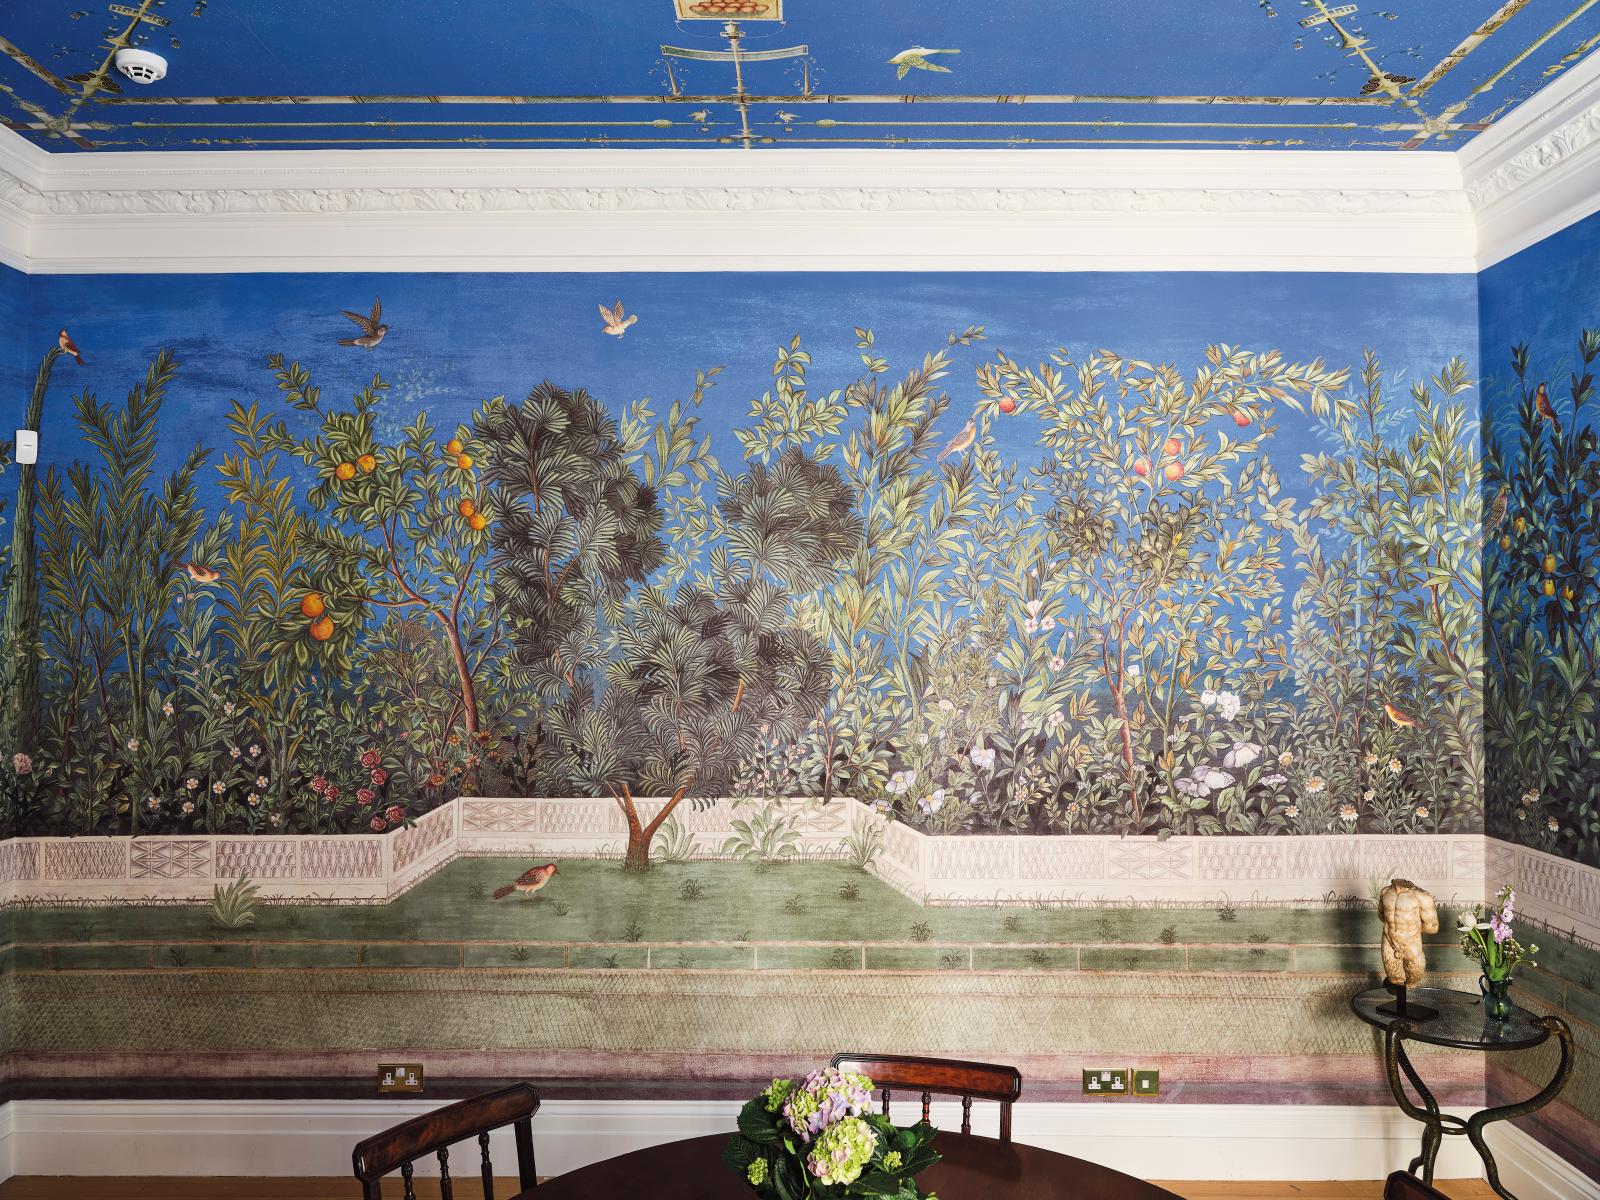 Décor Livia’s Garden avec un plafond inspiré de Pompéi, pour un collectionneur londonien. © Photo Dean-Hearne 